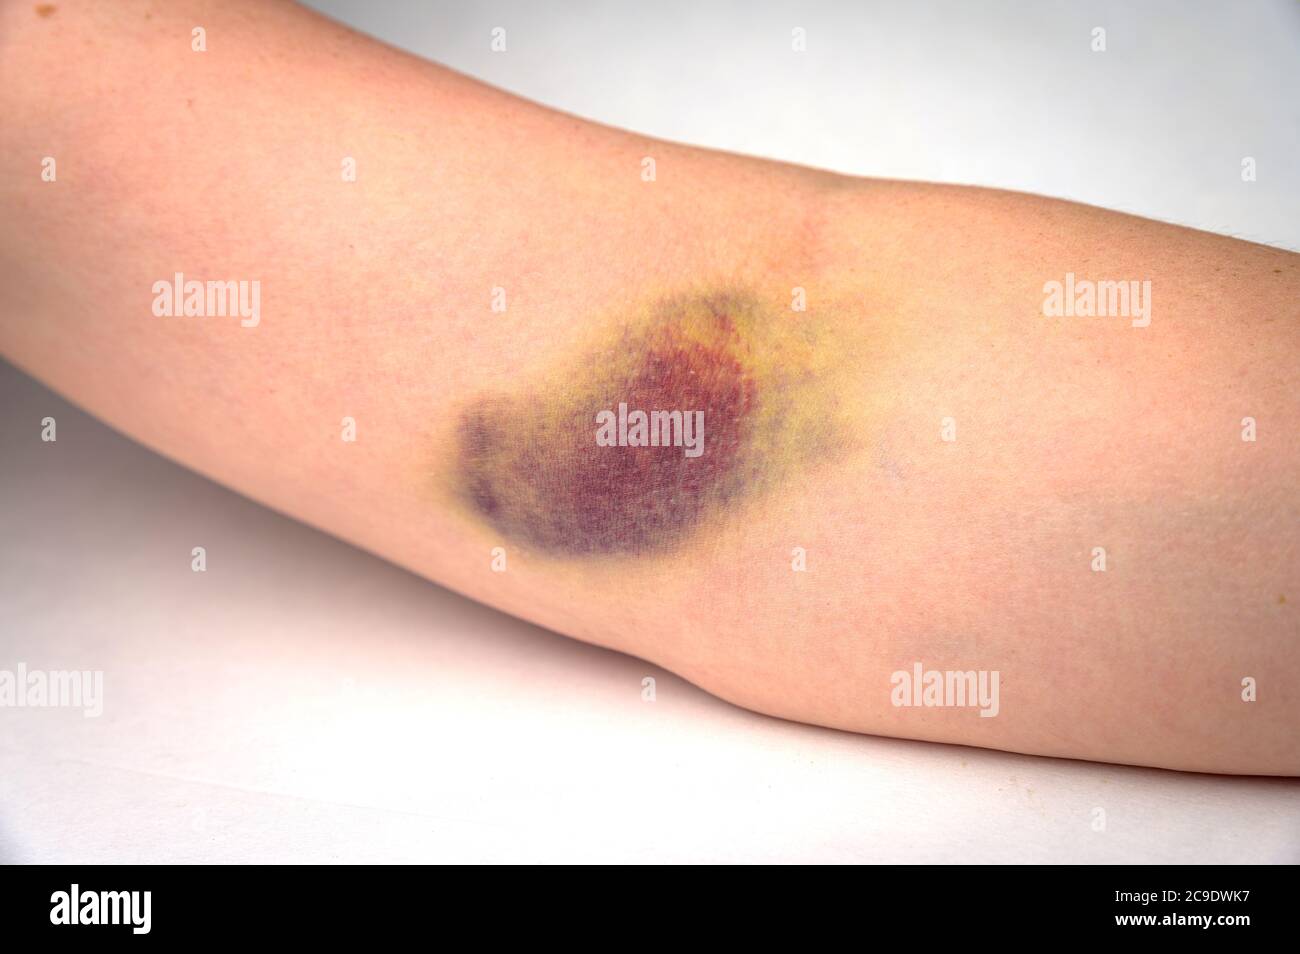 Gros plan d'une très grande ecchymose sur un bras humain après un  prélèvement de sang bâché Photo Stock - Alamy